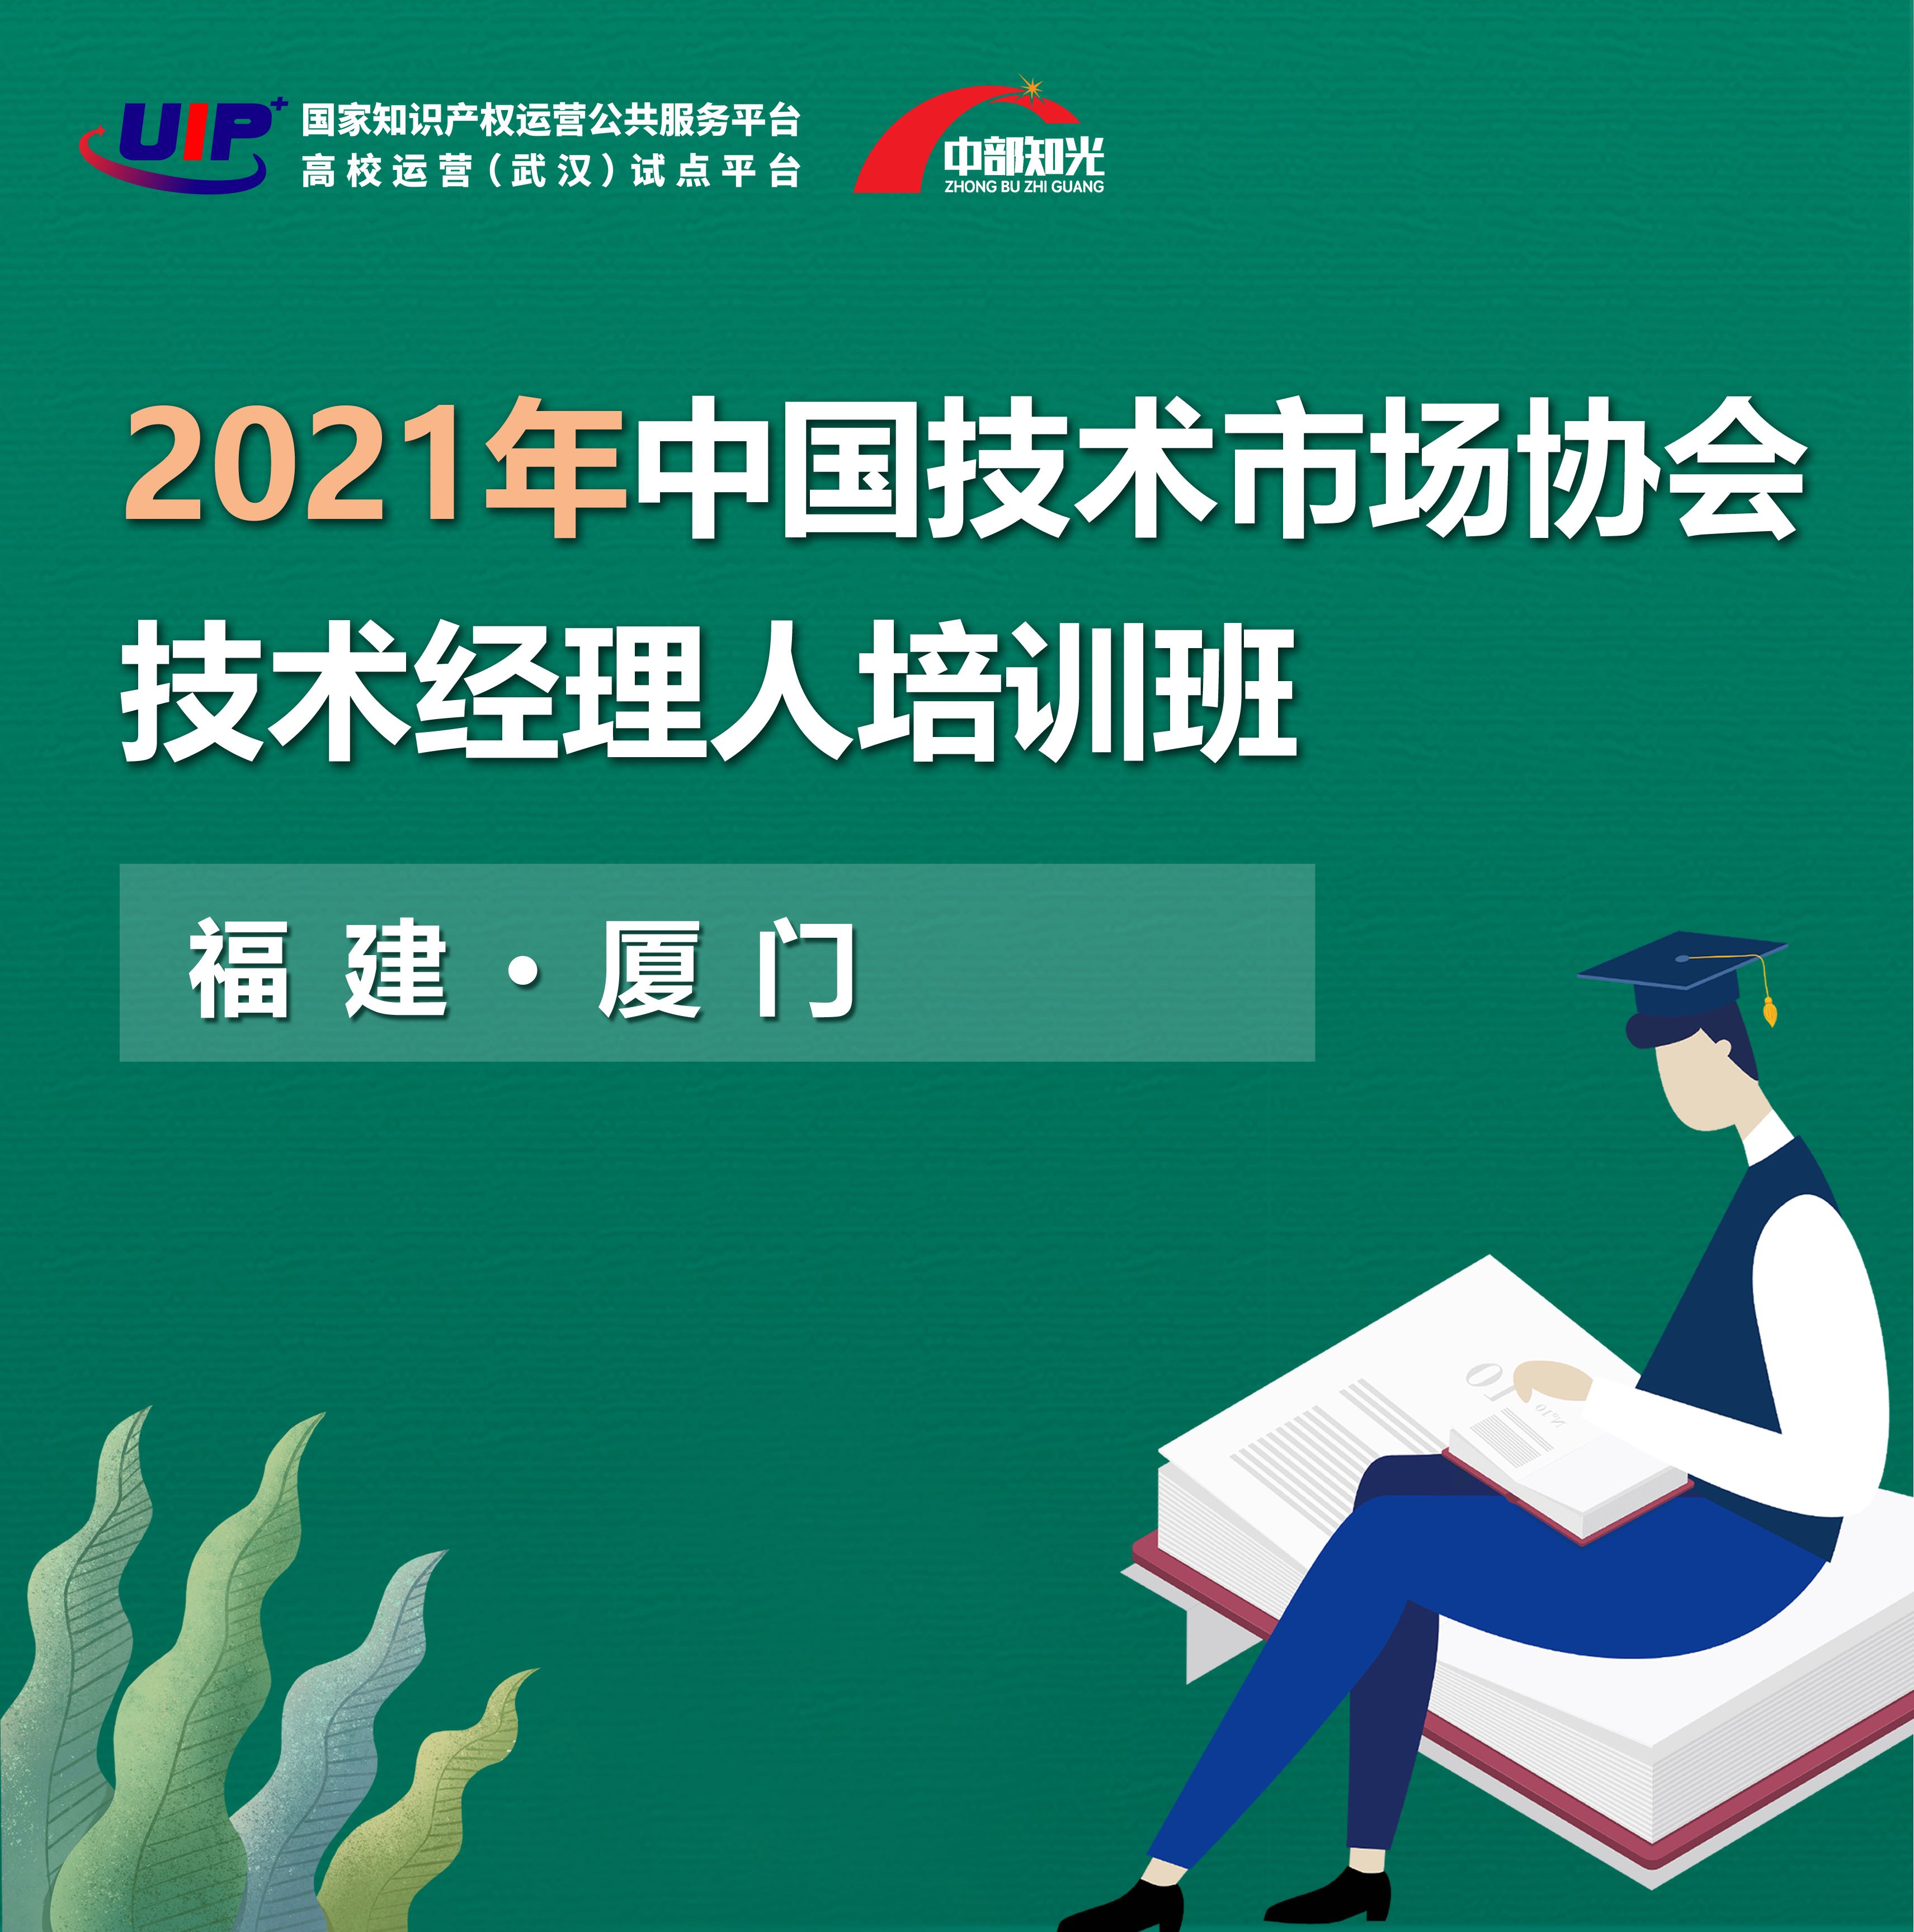 2021年中国技术市场协会技术经理人培训班